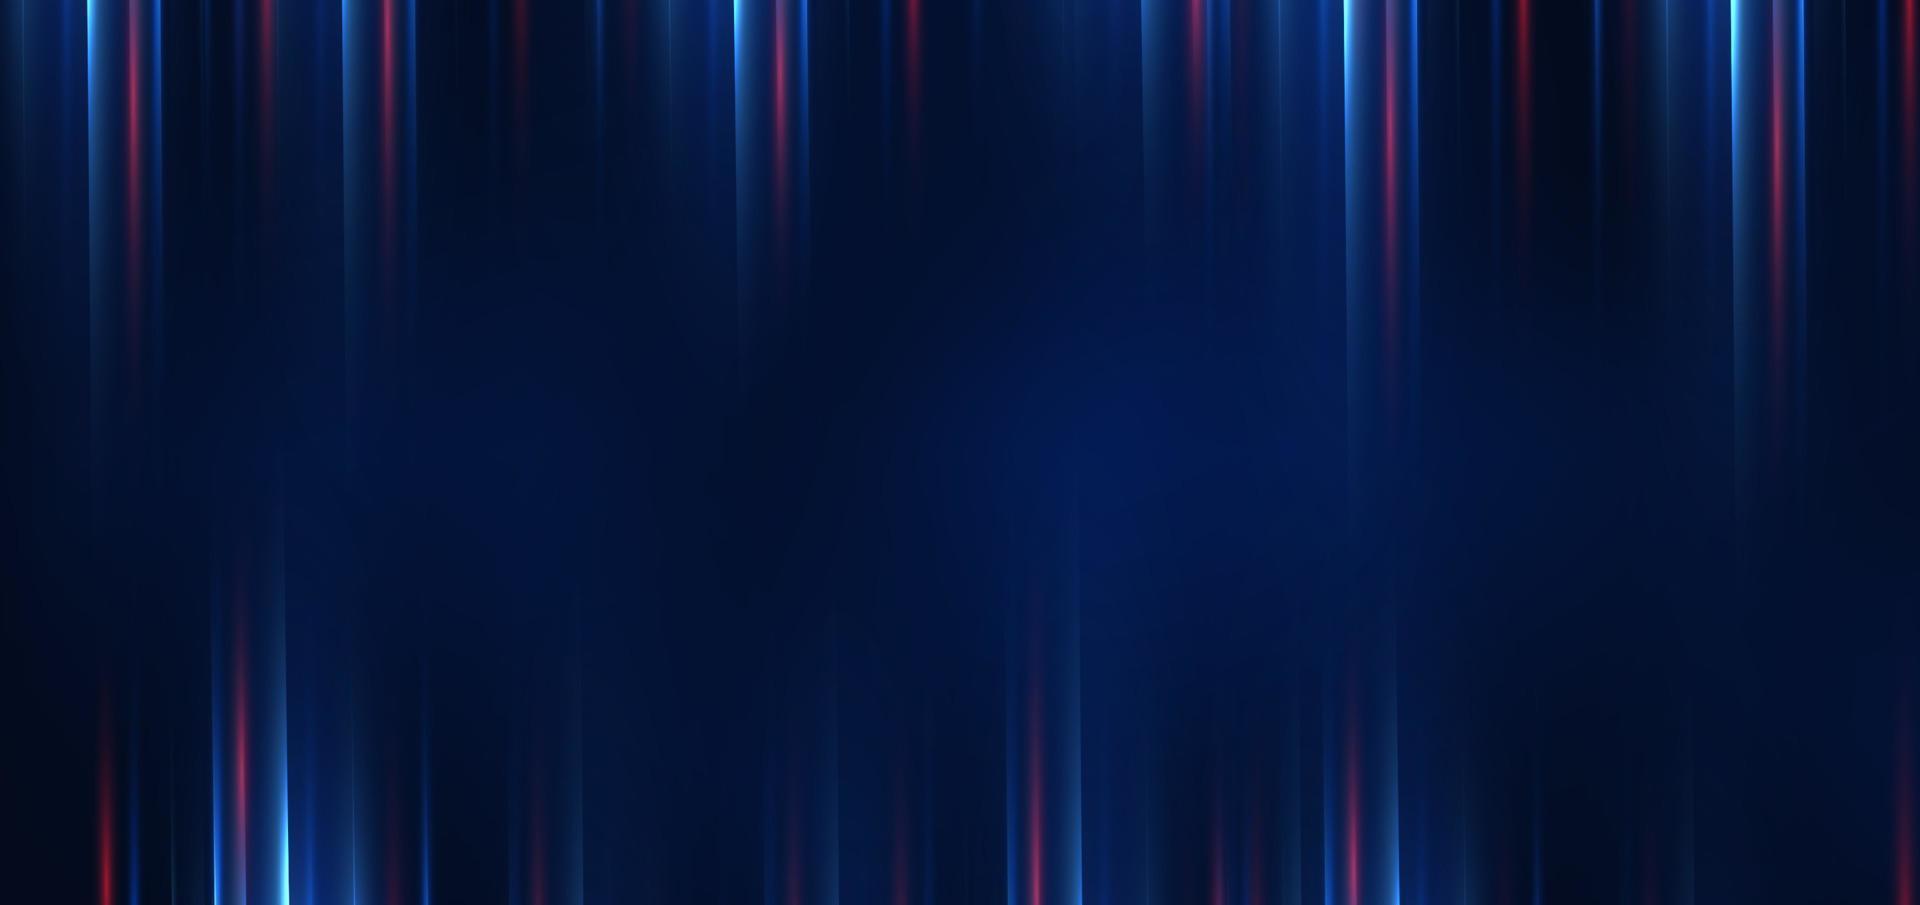 tecnologia abstrata futurista linhas de luz azuis e vermelhas brilhantes com efeito de desfoque de movimento de velocidade em fundo azul escuro. vetor